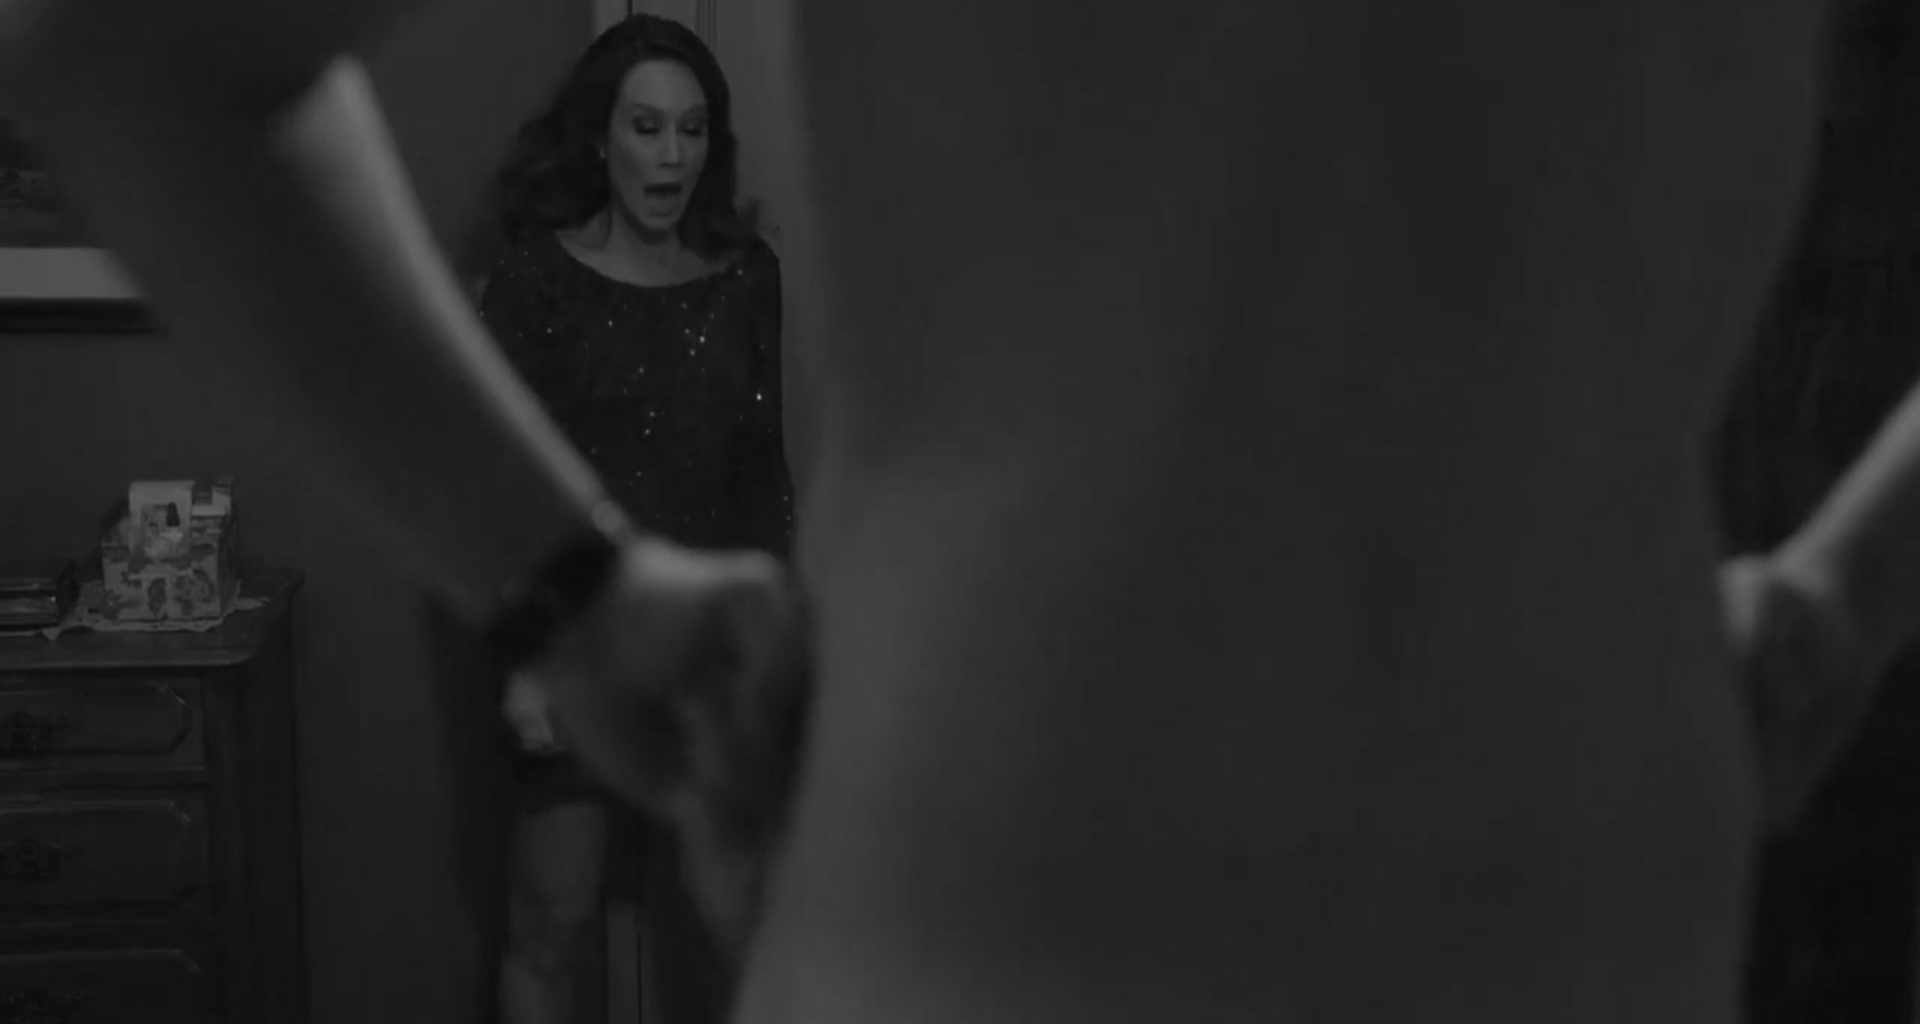 Imagem em preto e branco de homem nu, de costas, em primeiro plano. Ao fundo, uma mulher olha surpresa para a cena. 